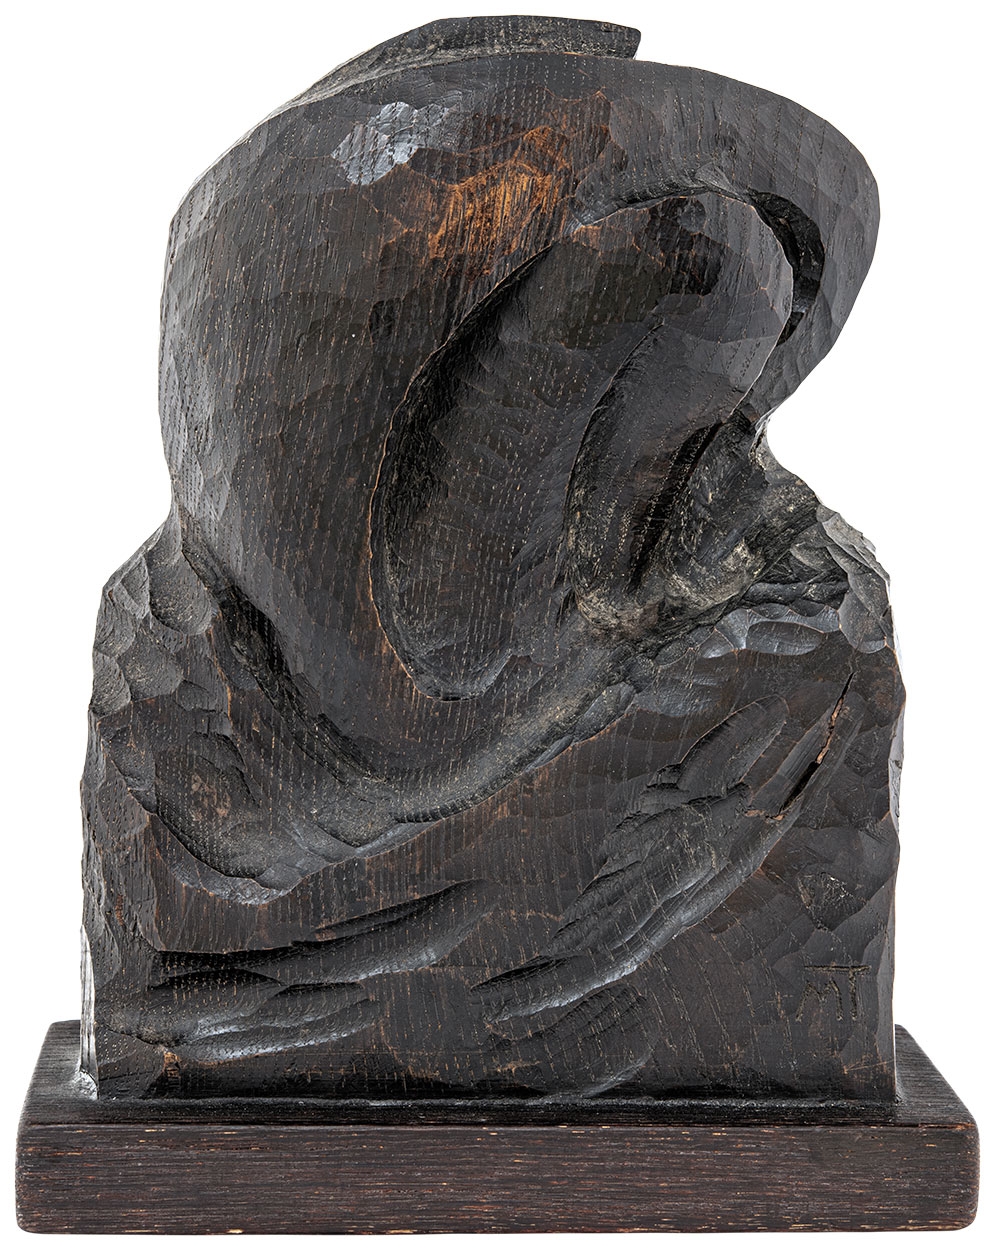 Mattis Teutsch János (1884-1960) Wooden Sculpture (Figure), around 1918-1919